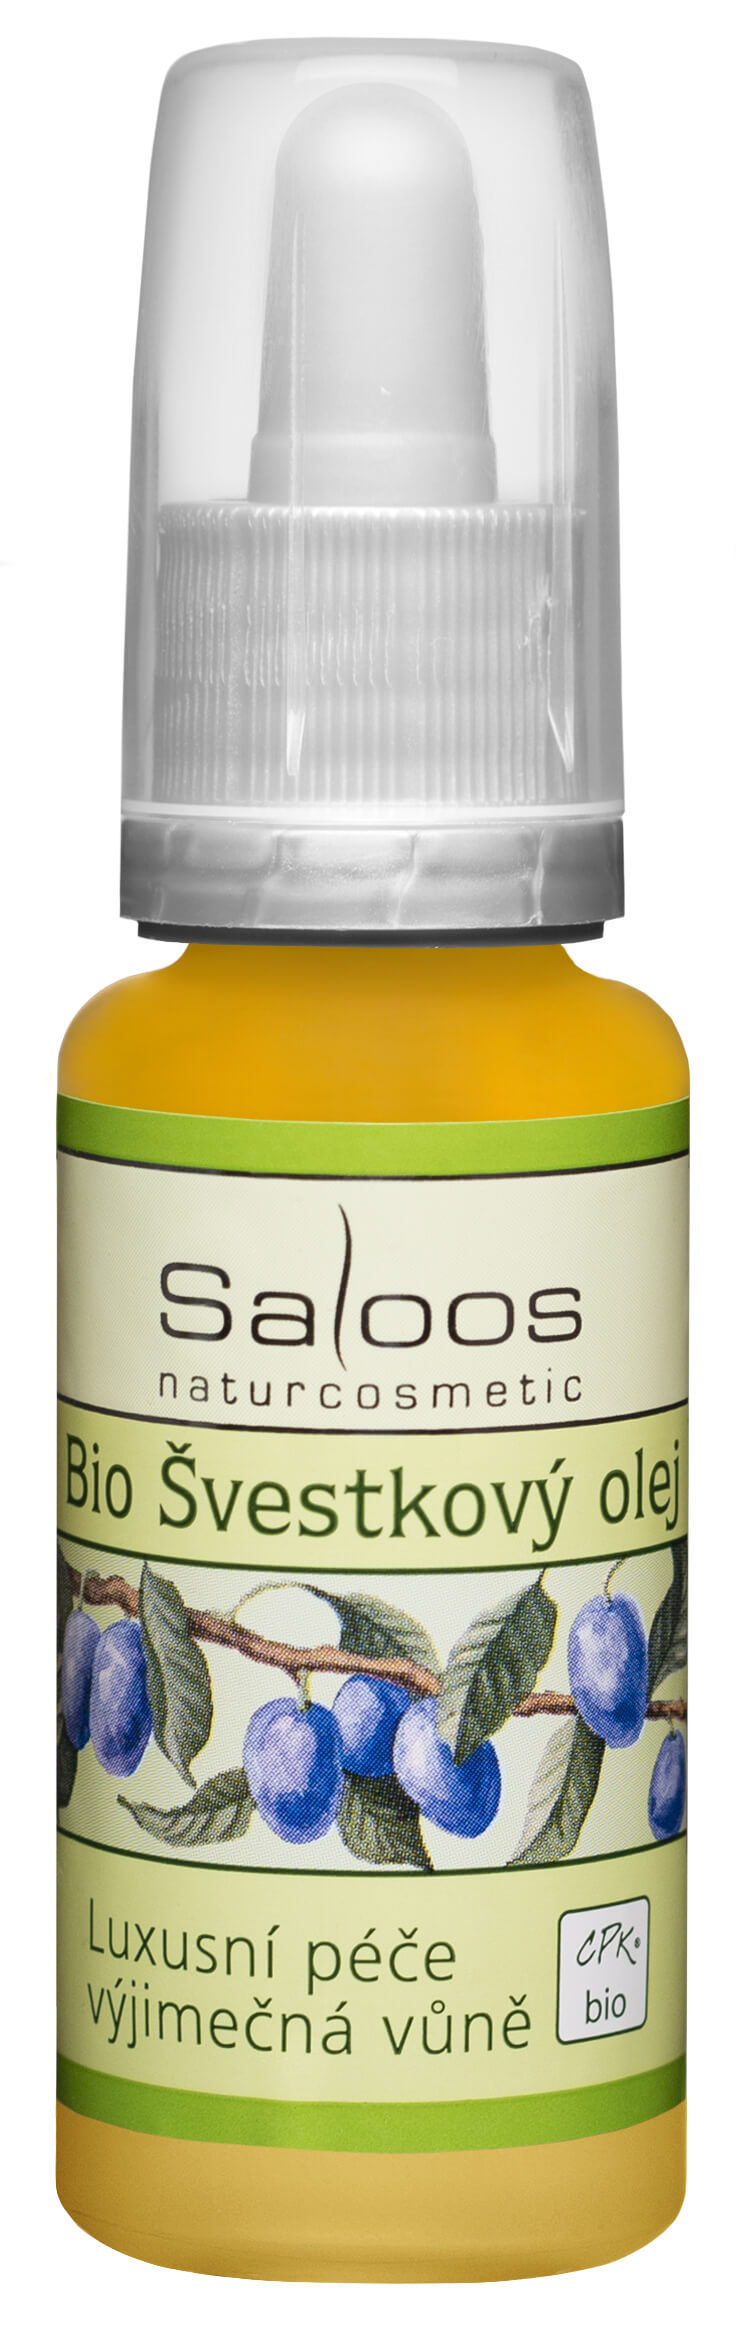 Saloos Bio Švestkový olej lisovaný za studena 20 ml